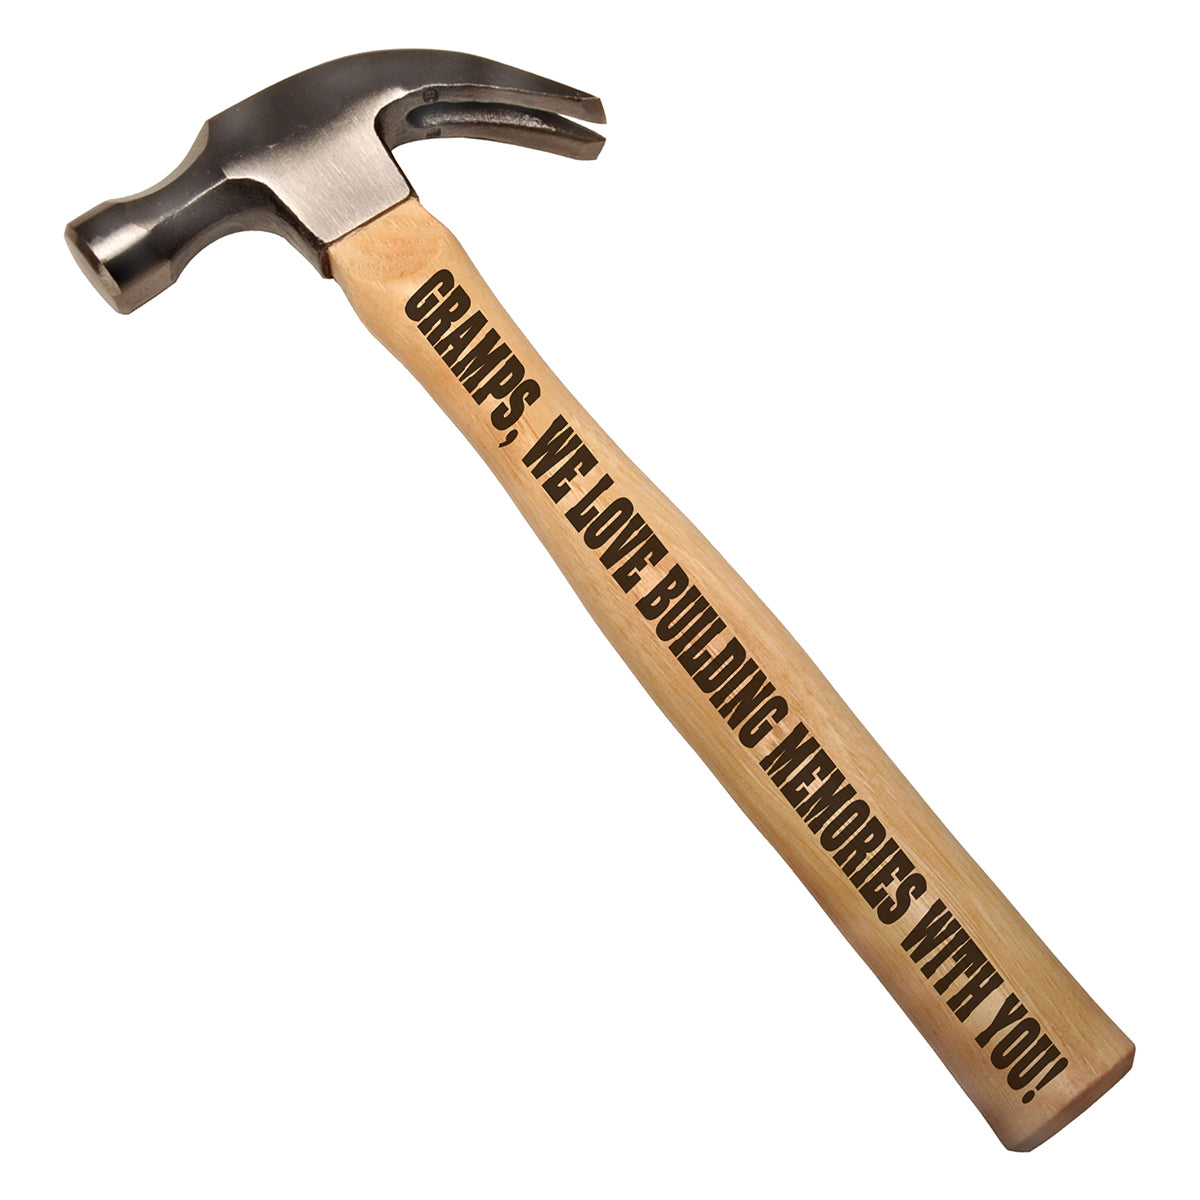 Gramps, We Love Building Memories With You DIY Gift Engraved Wood Handle Steel Hammer